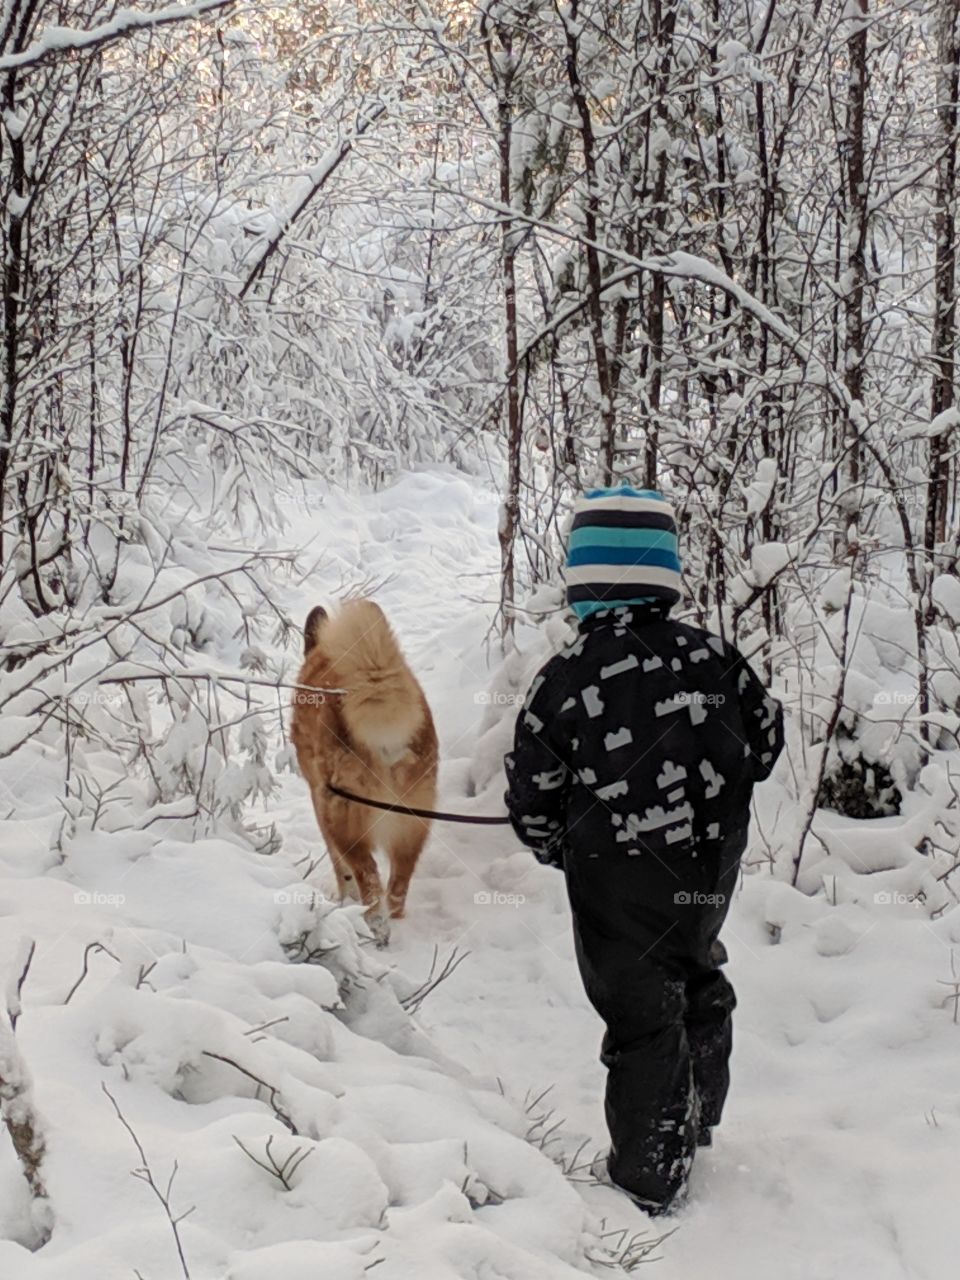 Walking the dog, best friends on a walk